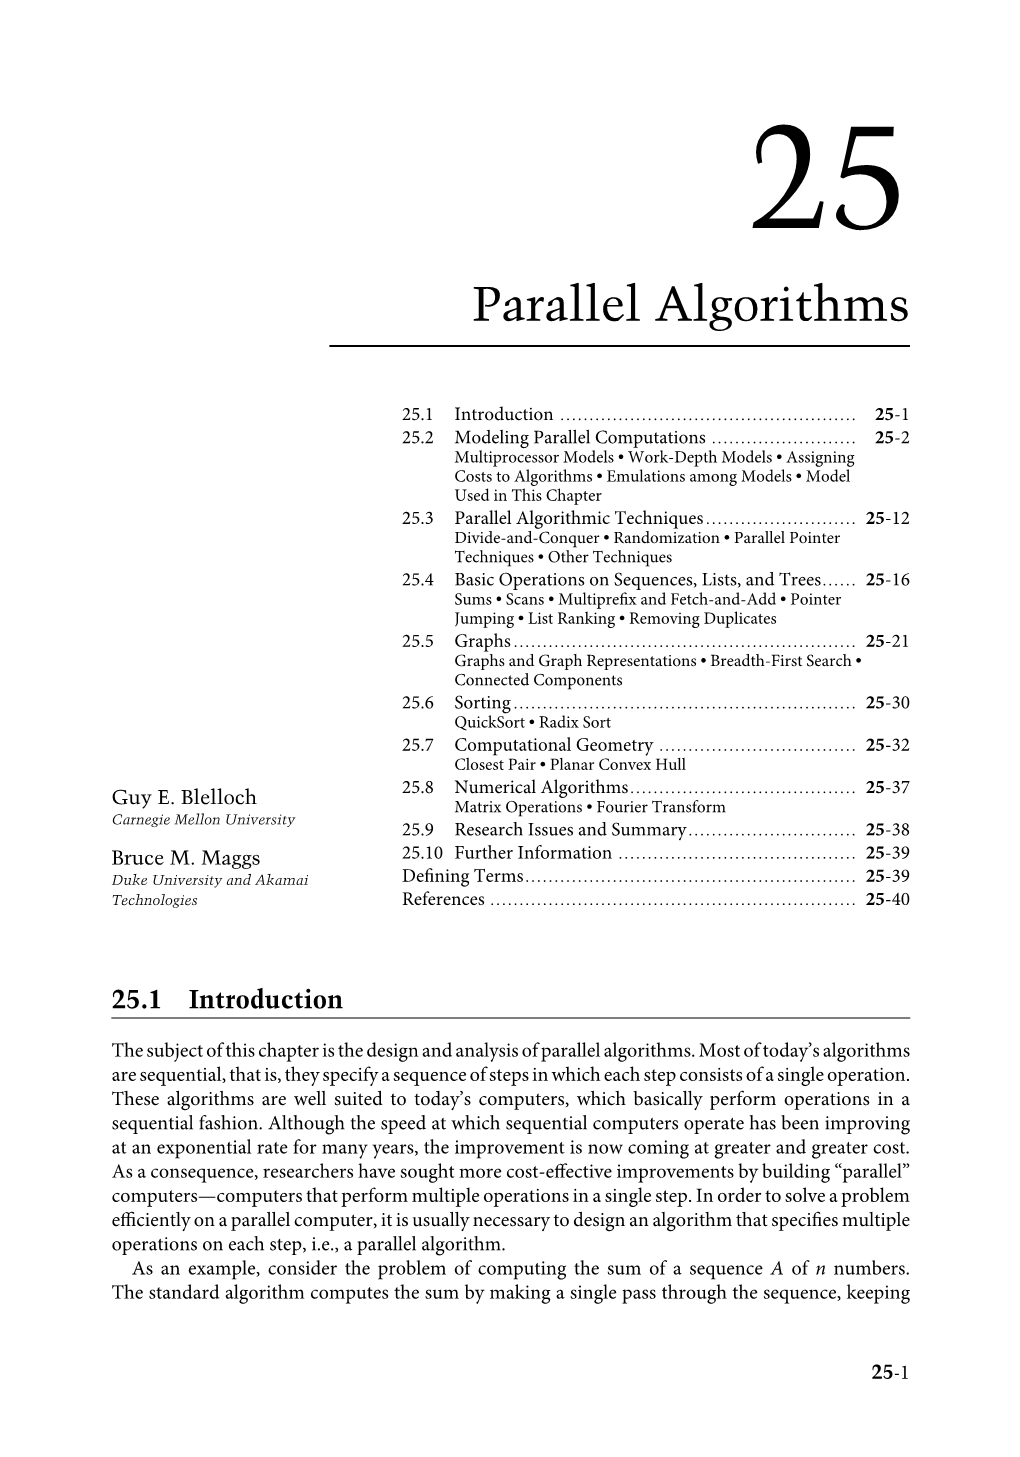 Parallel Algorithms